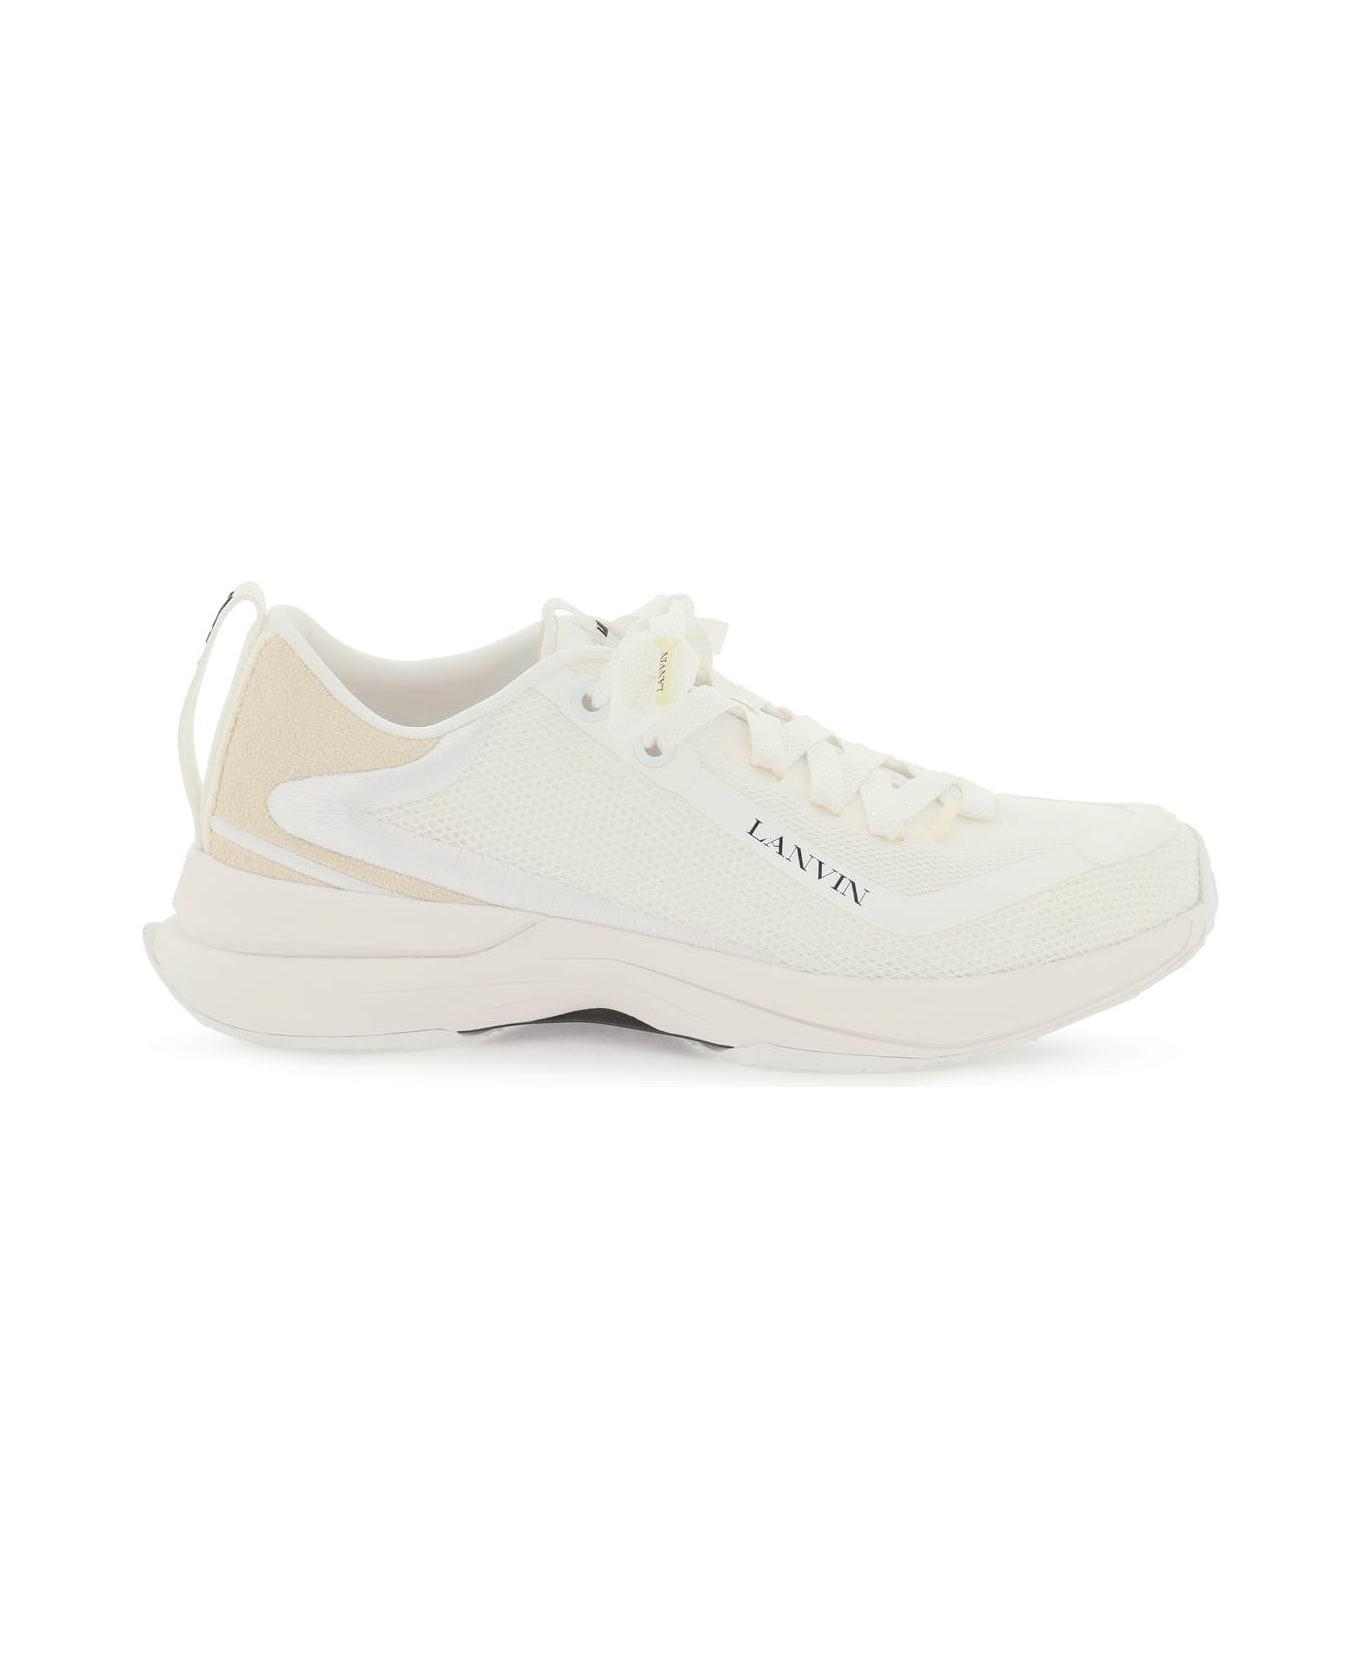 Lanvin Mesh Li Sneakers - WHITE WHITE (White)